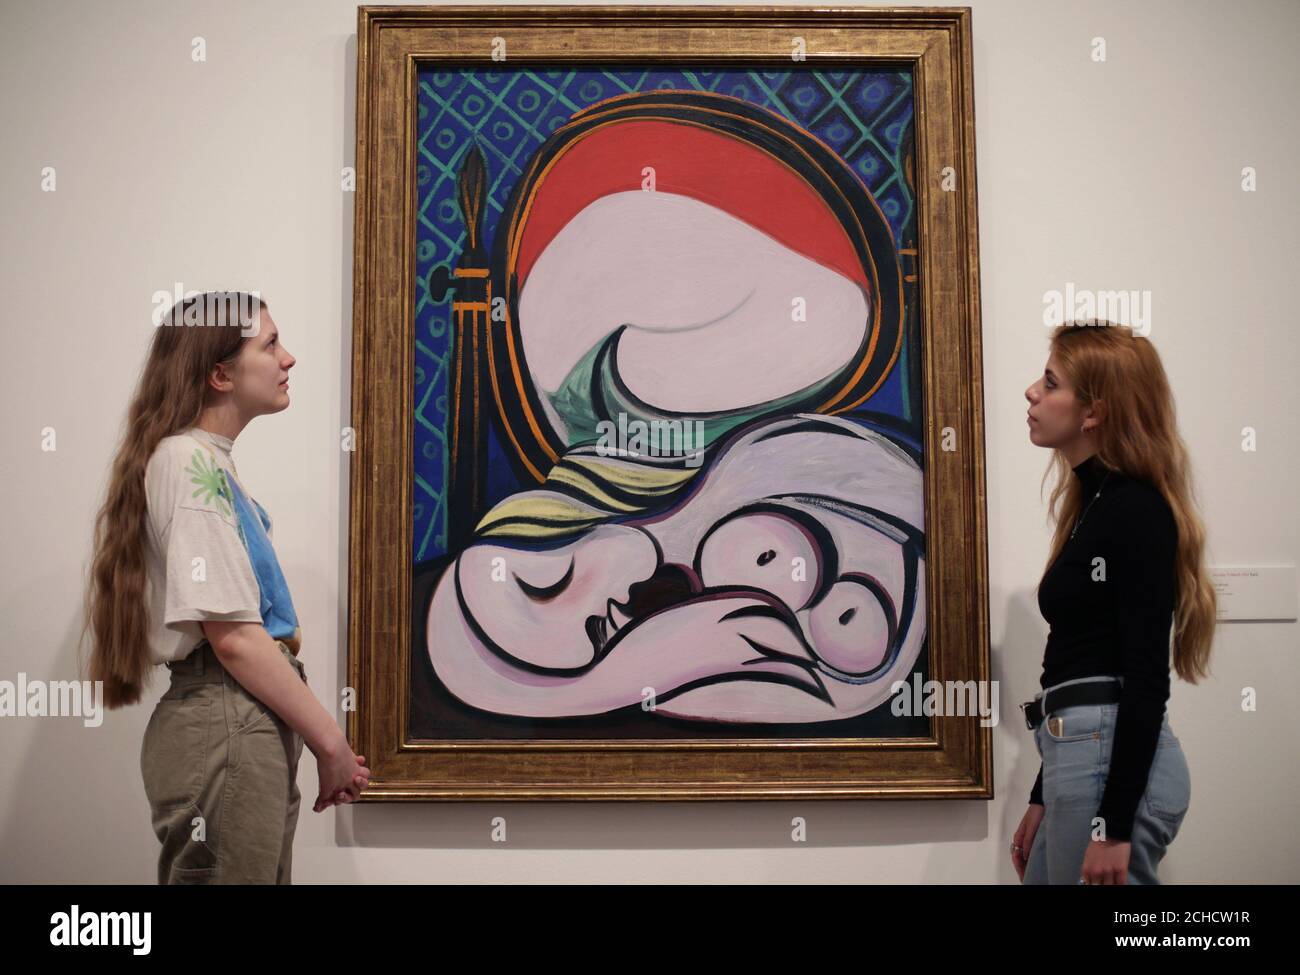 Femmes regardant le miroir de Pablo Picasso, 1932, lors d'un aperçu de l'exposition Picasso 1932 - Amour, gloire, tragédie à Tate Modern à Londres. Banque D'Images